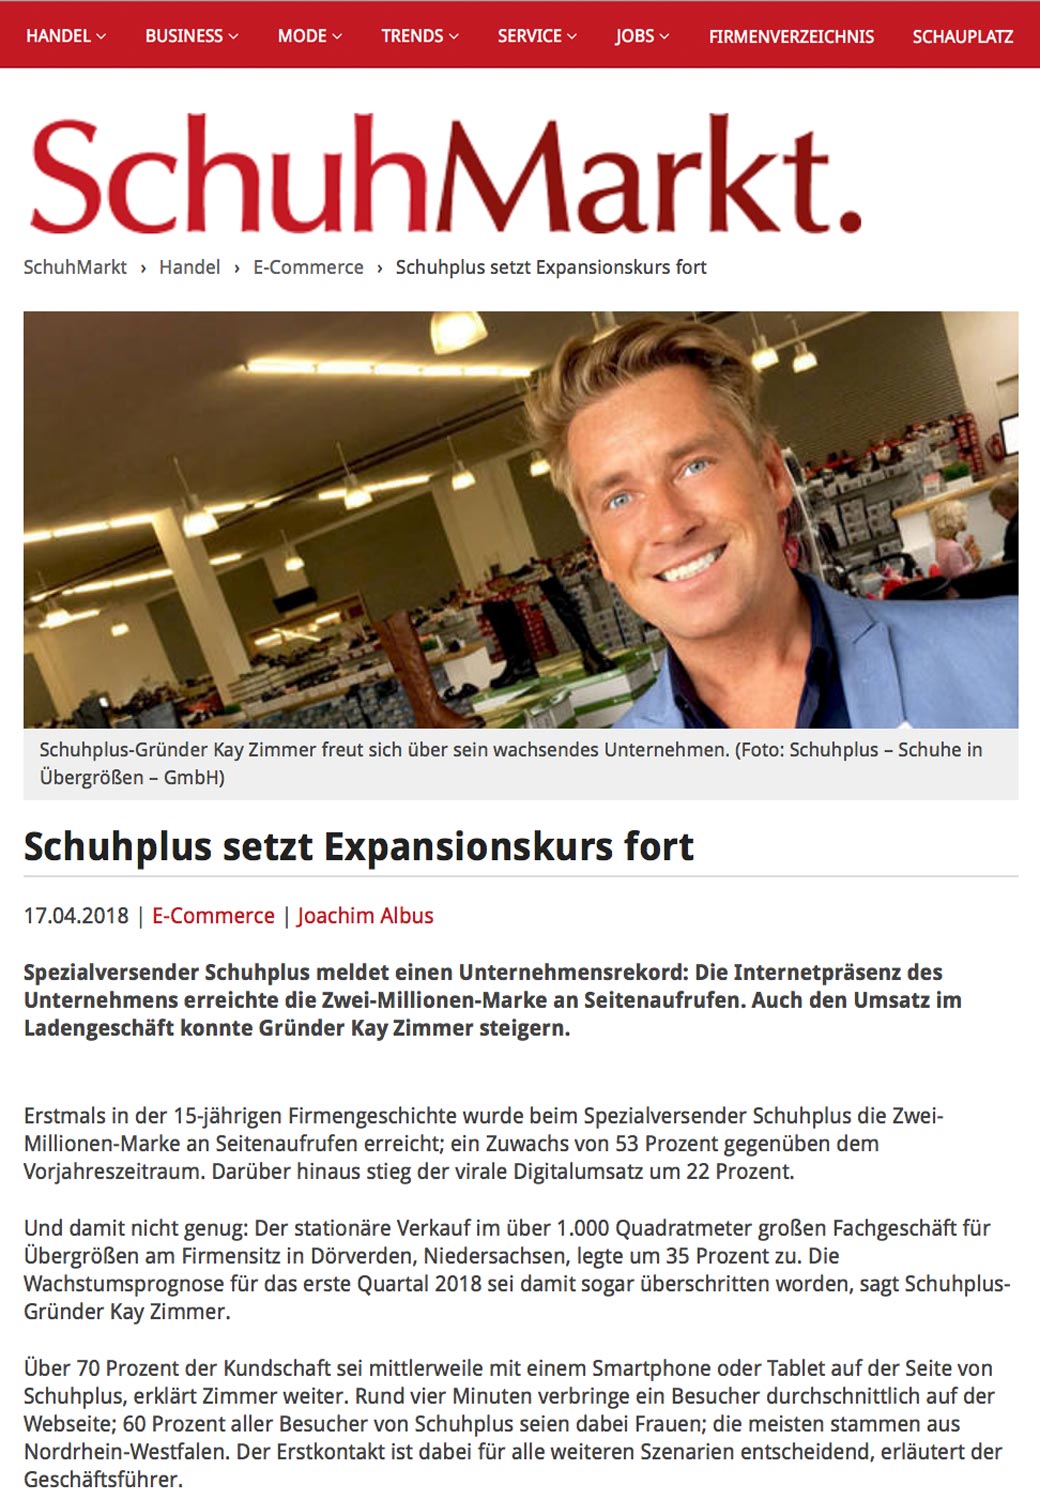 Bericht im Schuhfachmagazin SchuhMarkt zur Quartalsexpansion von schuhplus